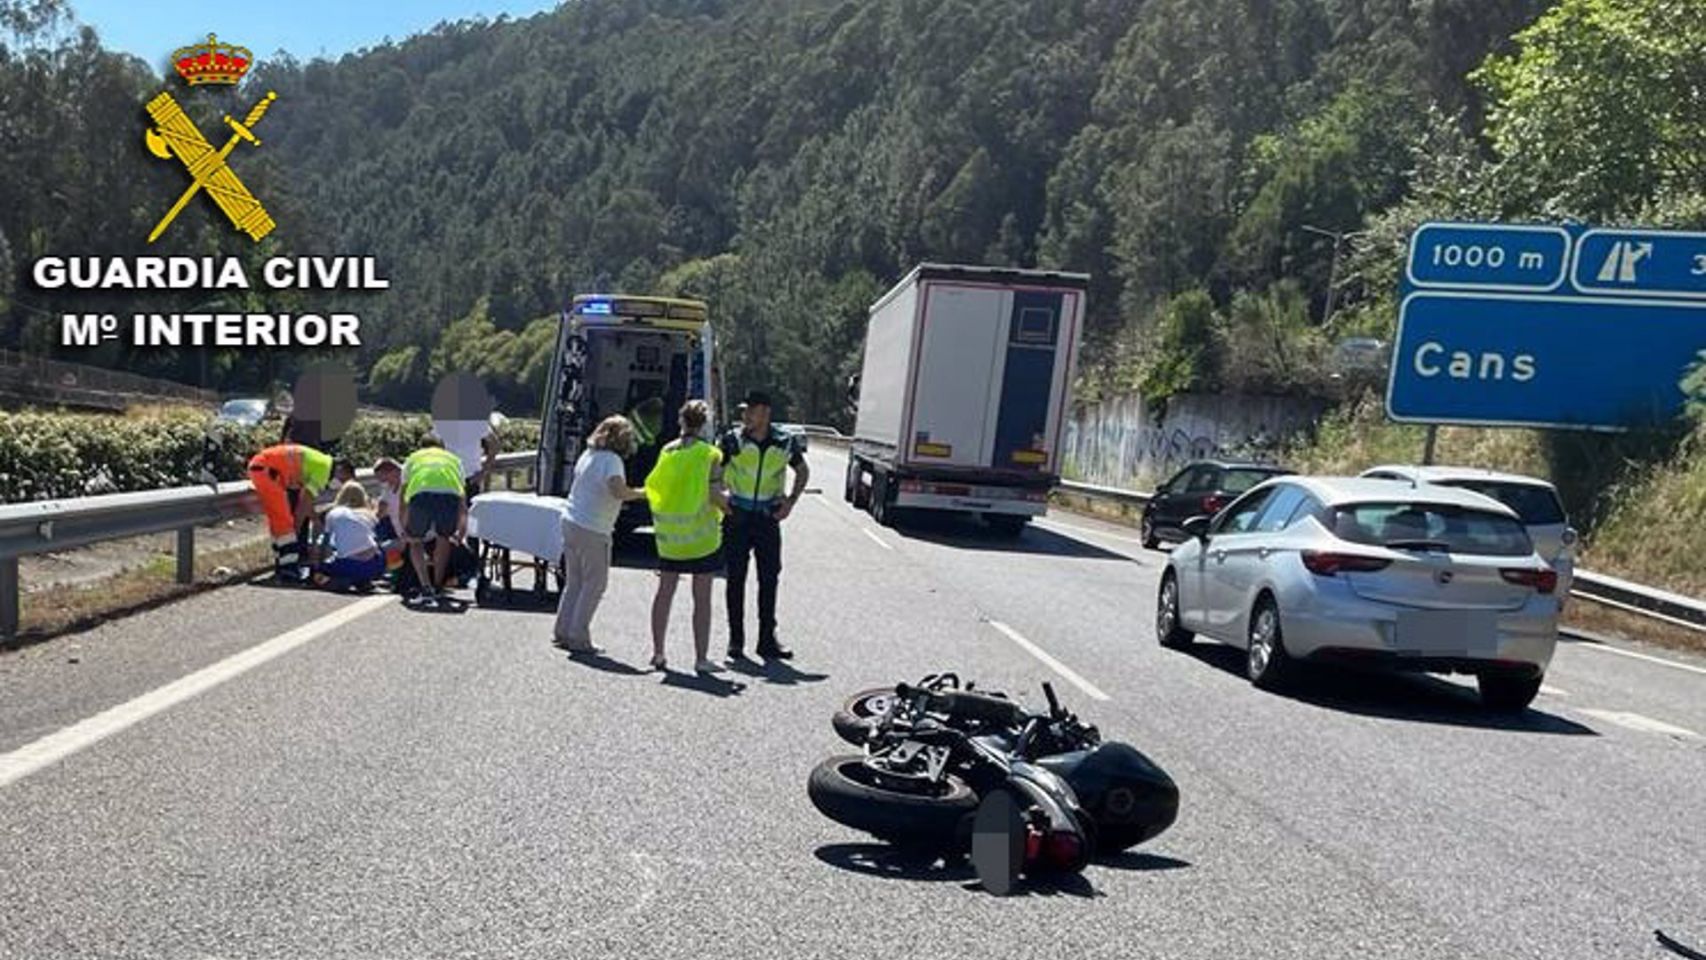 La Guardia Civil ya detuvo al conductor que causó el accidente de Cans